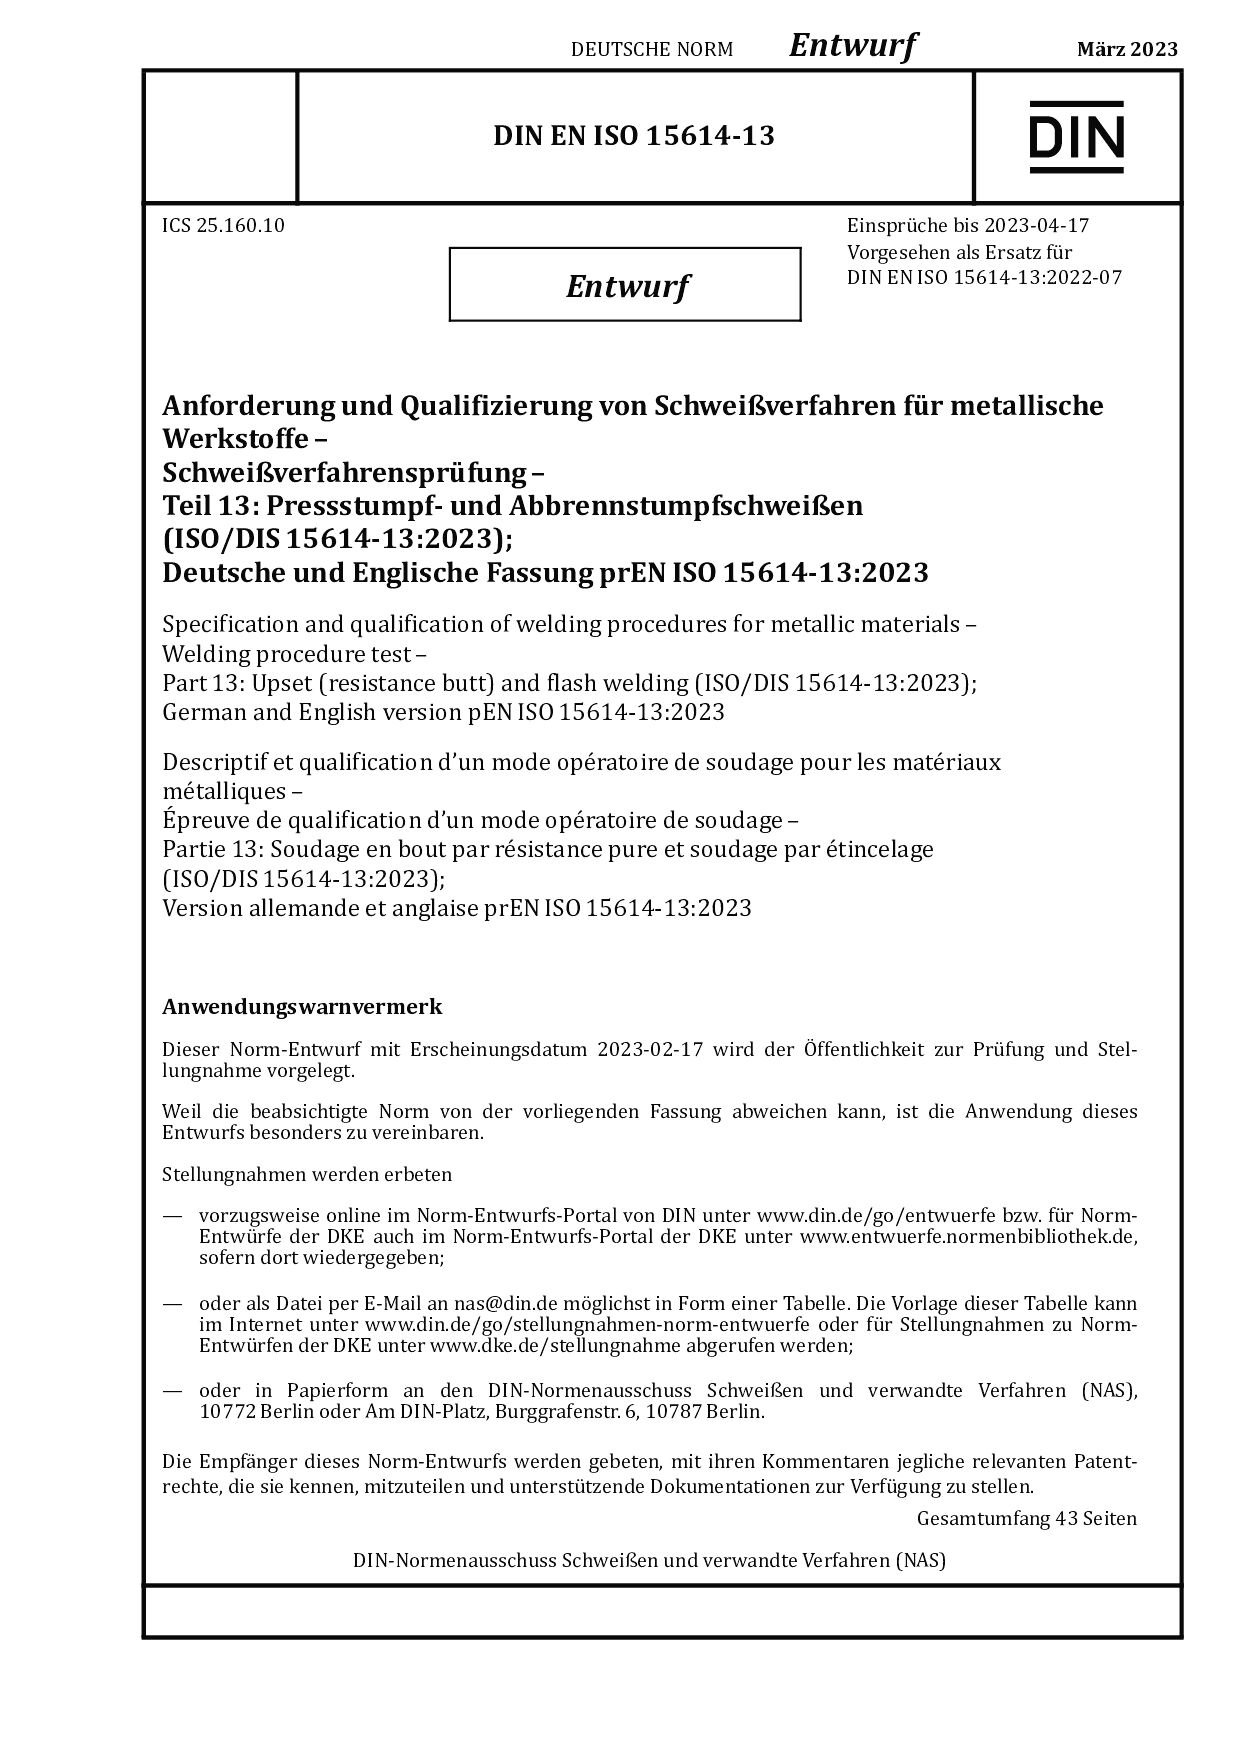 DIN EN ISO 15614-13:2023封面图